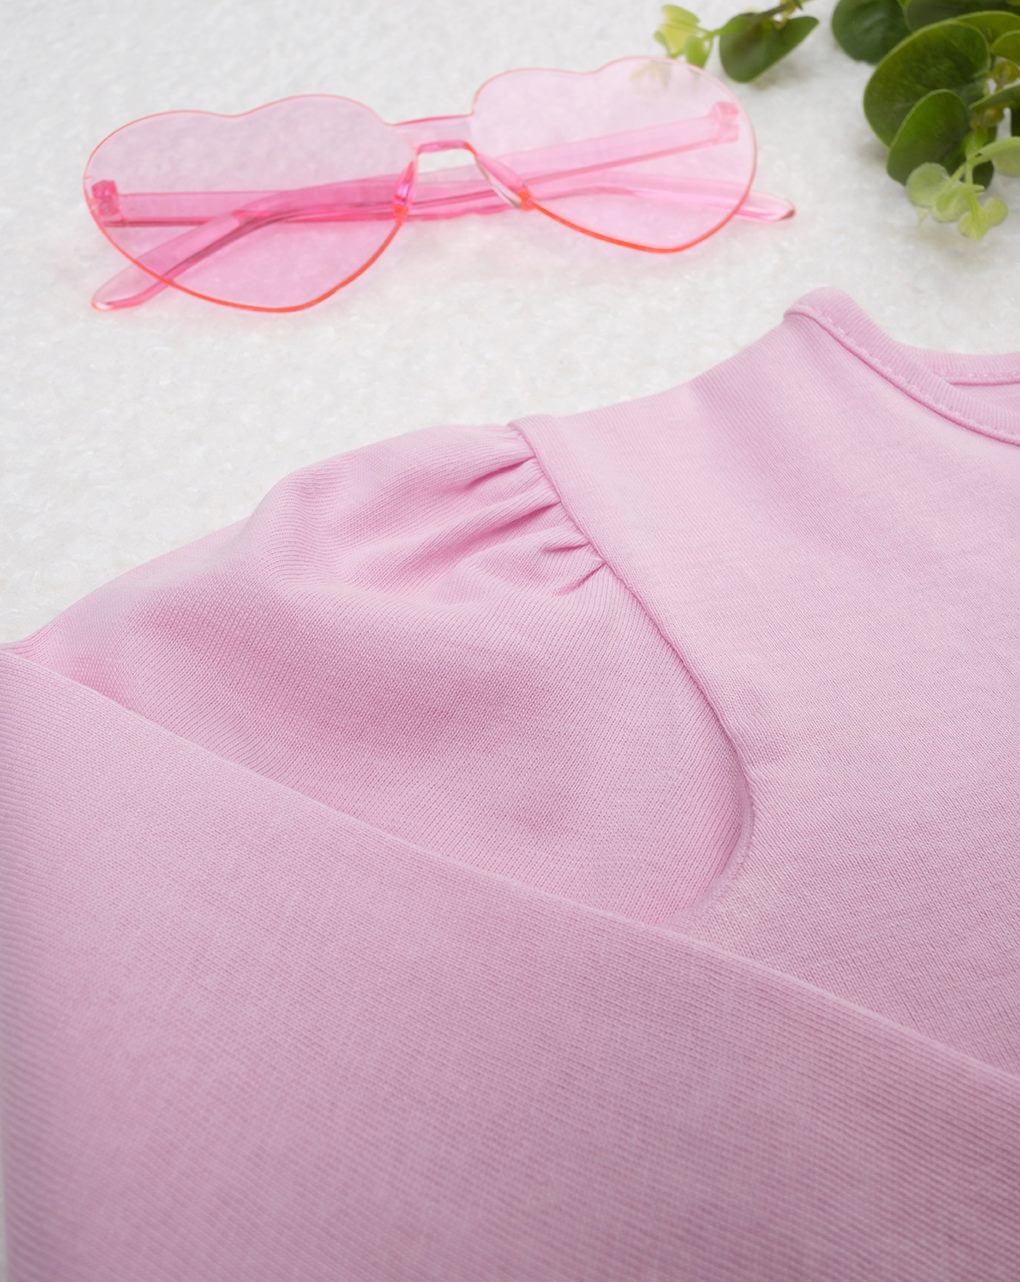 βρεφική μπλούζα ροζ με λαγουδάκια για κορίτσι - Prénatal